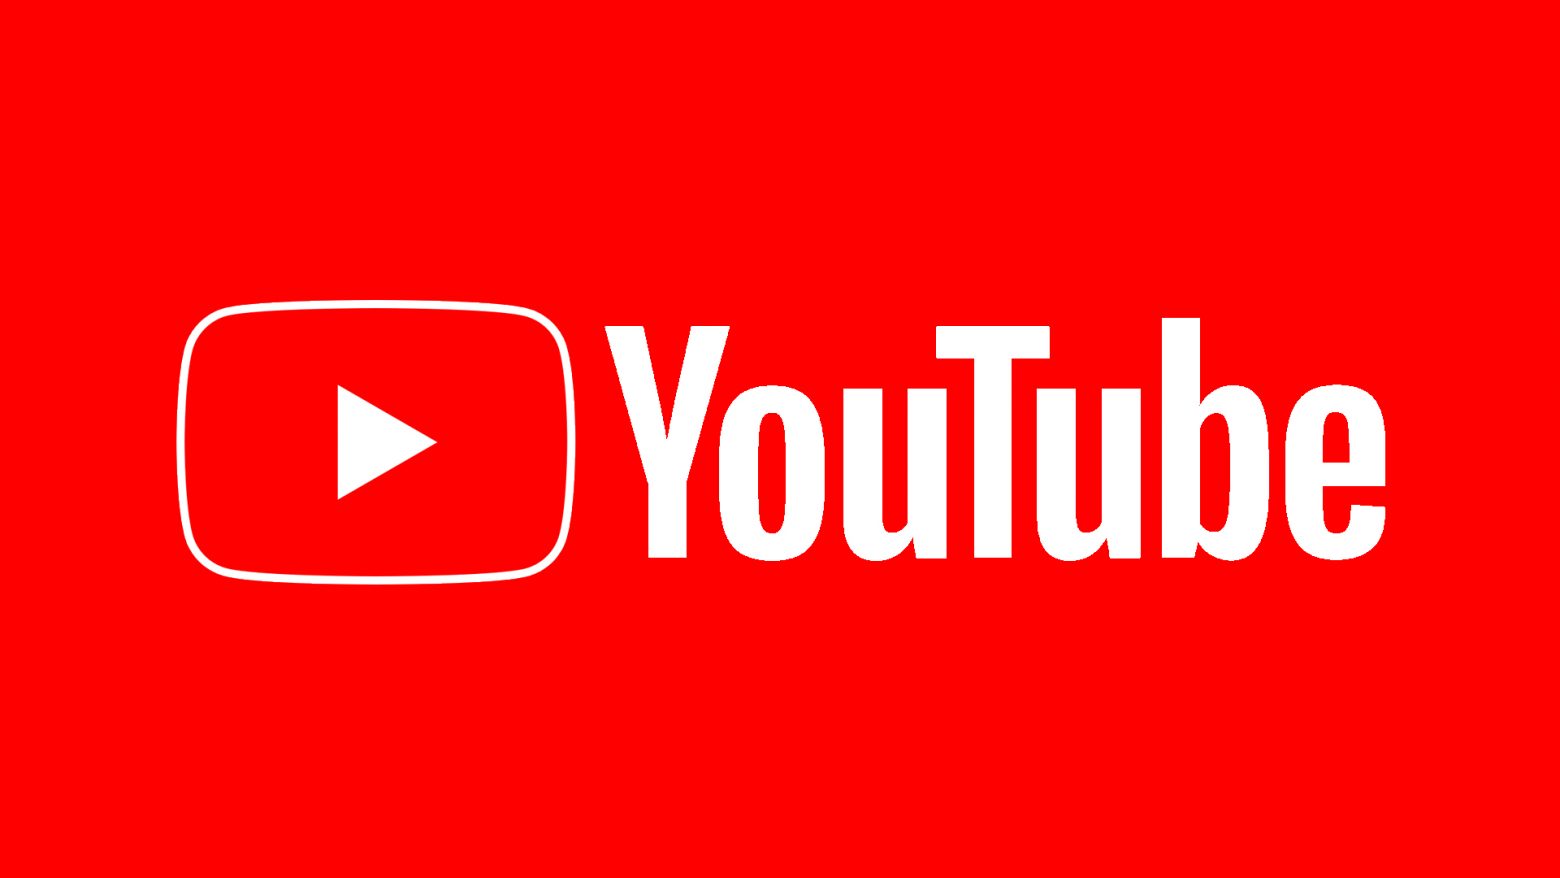 Το YouTube έγινε... 17 ετών! Η ιδέα που άλλαξε για πάντα τη μουσική βιομηχανία - Τα πρώτα βίντεο